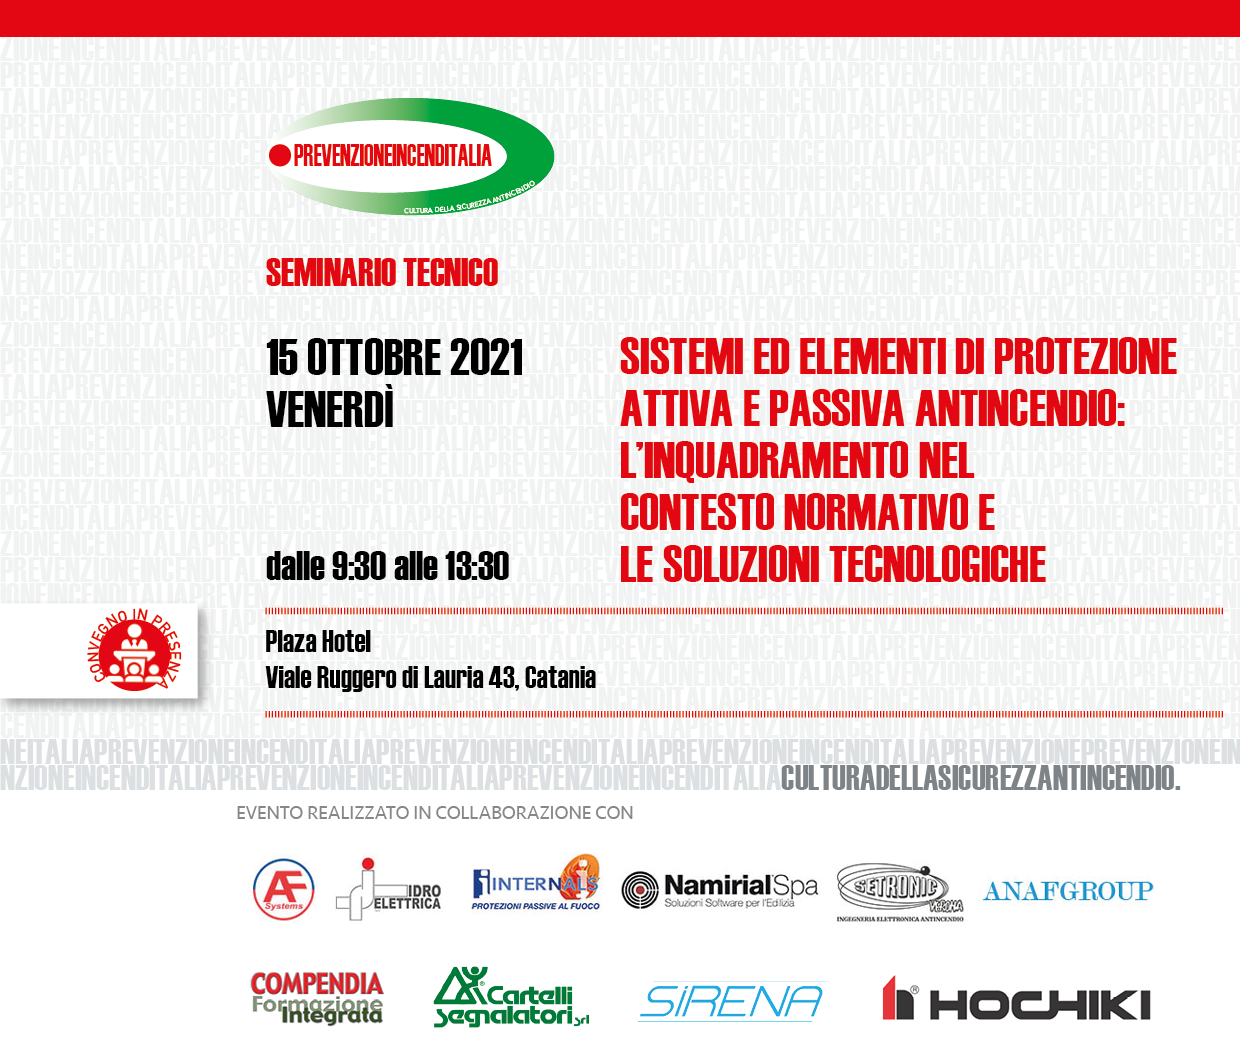 Siamo Sponsor del seminario tecnico organizzato da PREVENZIONEINCENDITALIA a Catania!